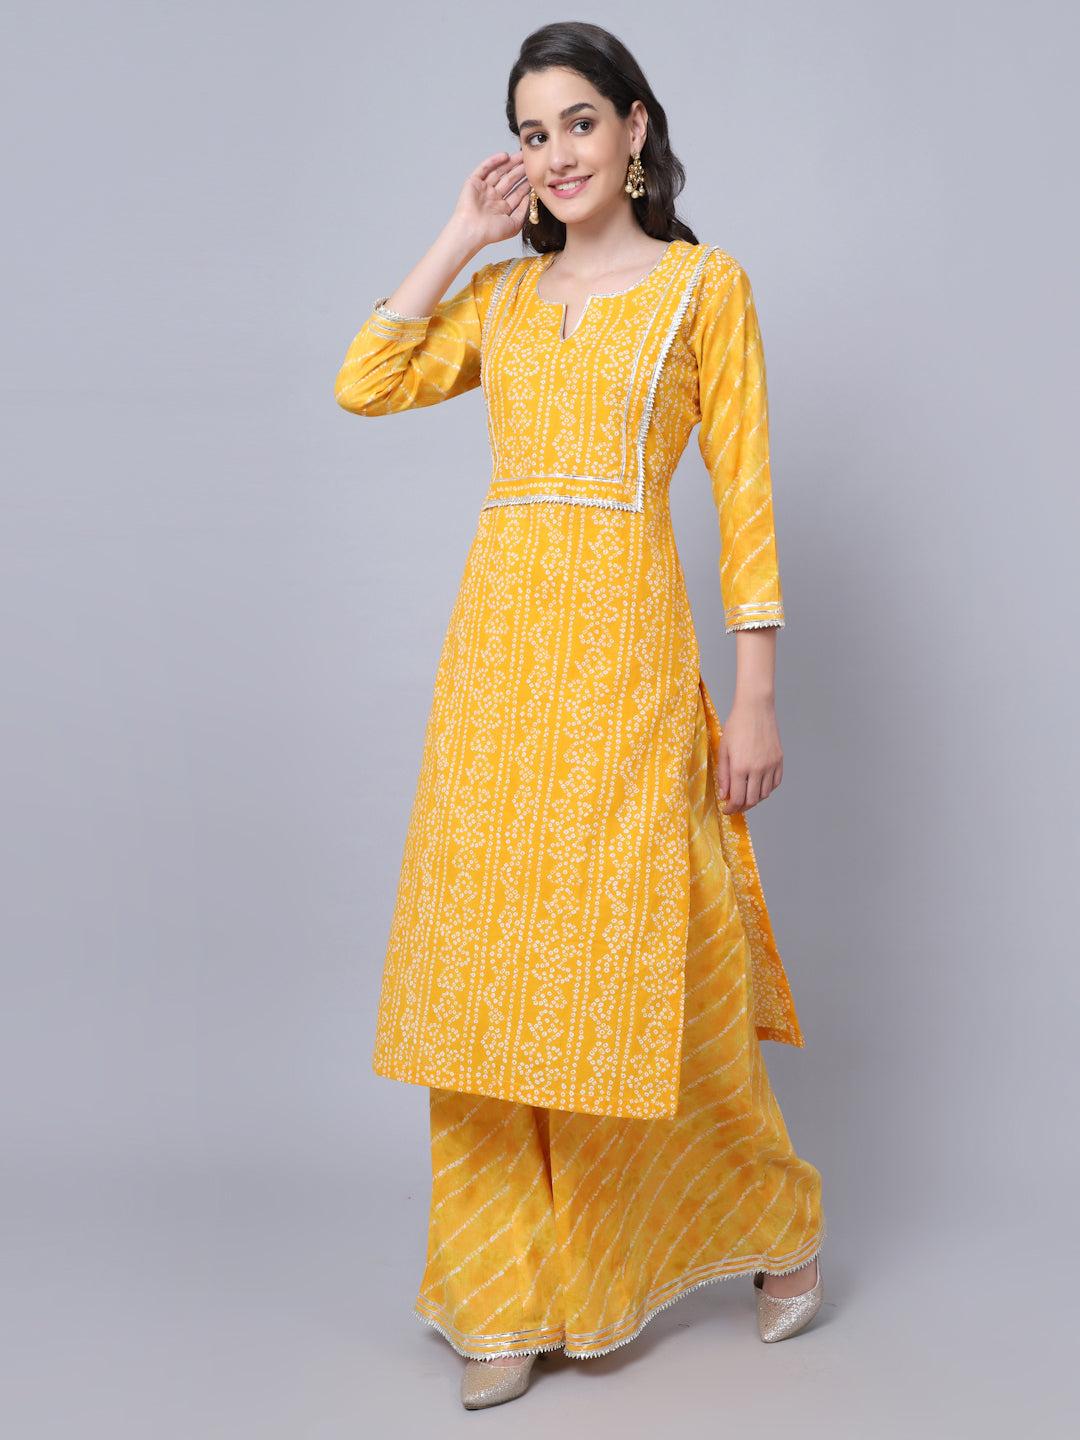 Women Haldi Kurti And Palazzo Beautiful Set Yellow Color Muslin Fabric  Modern | eBay